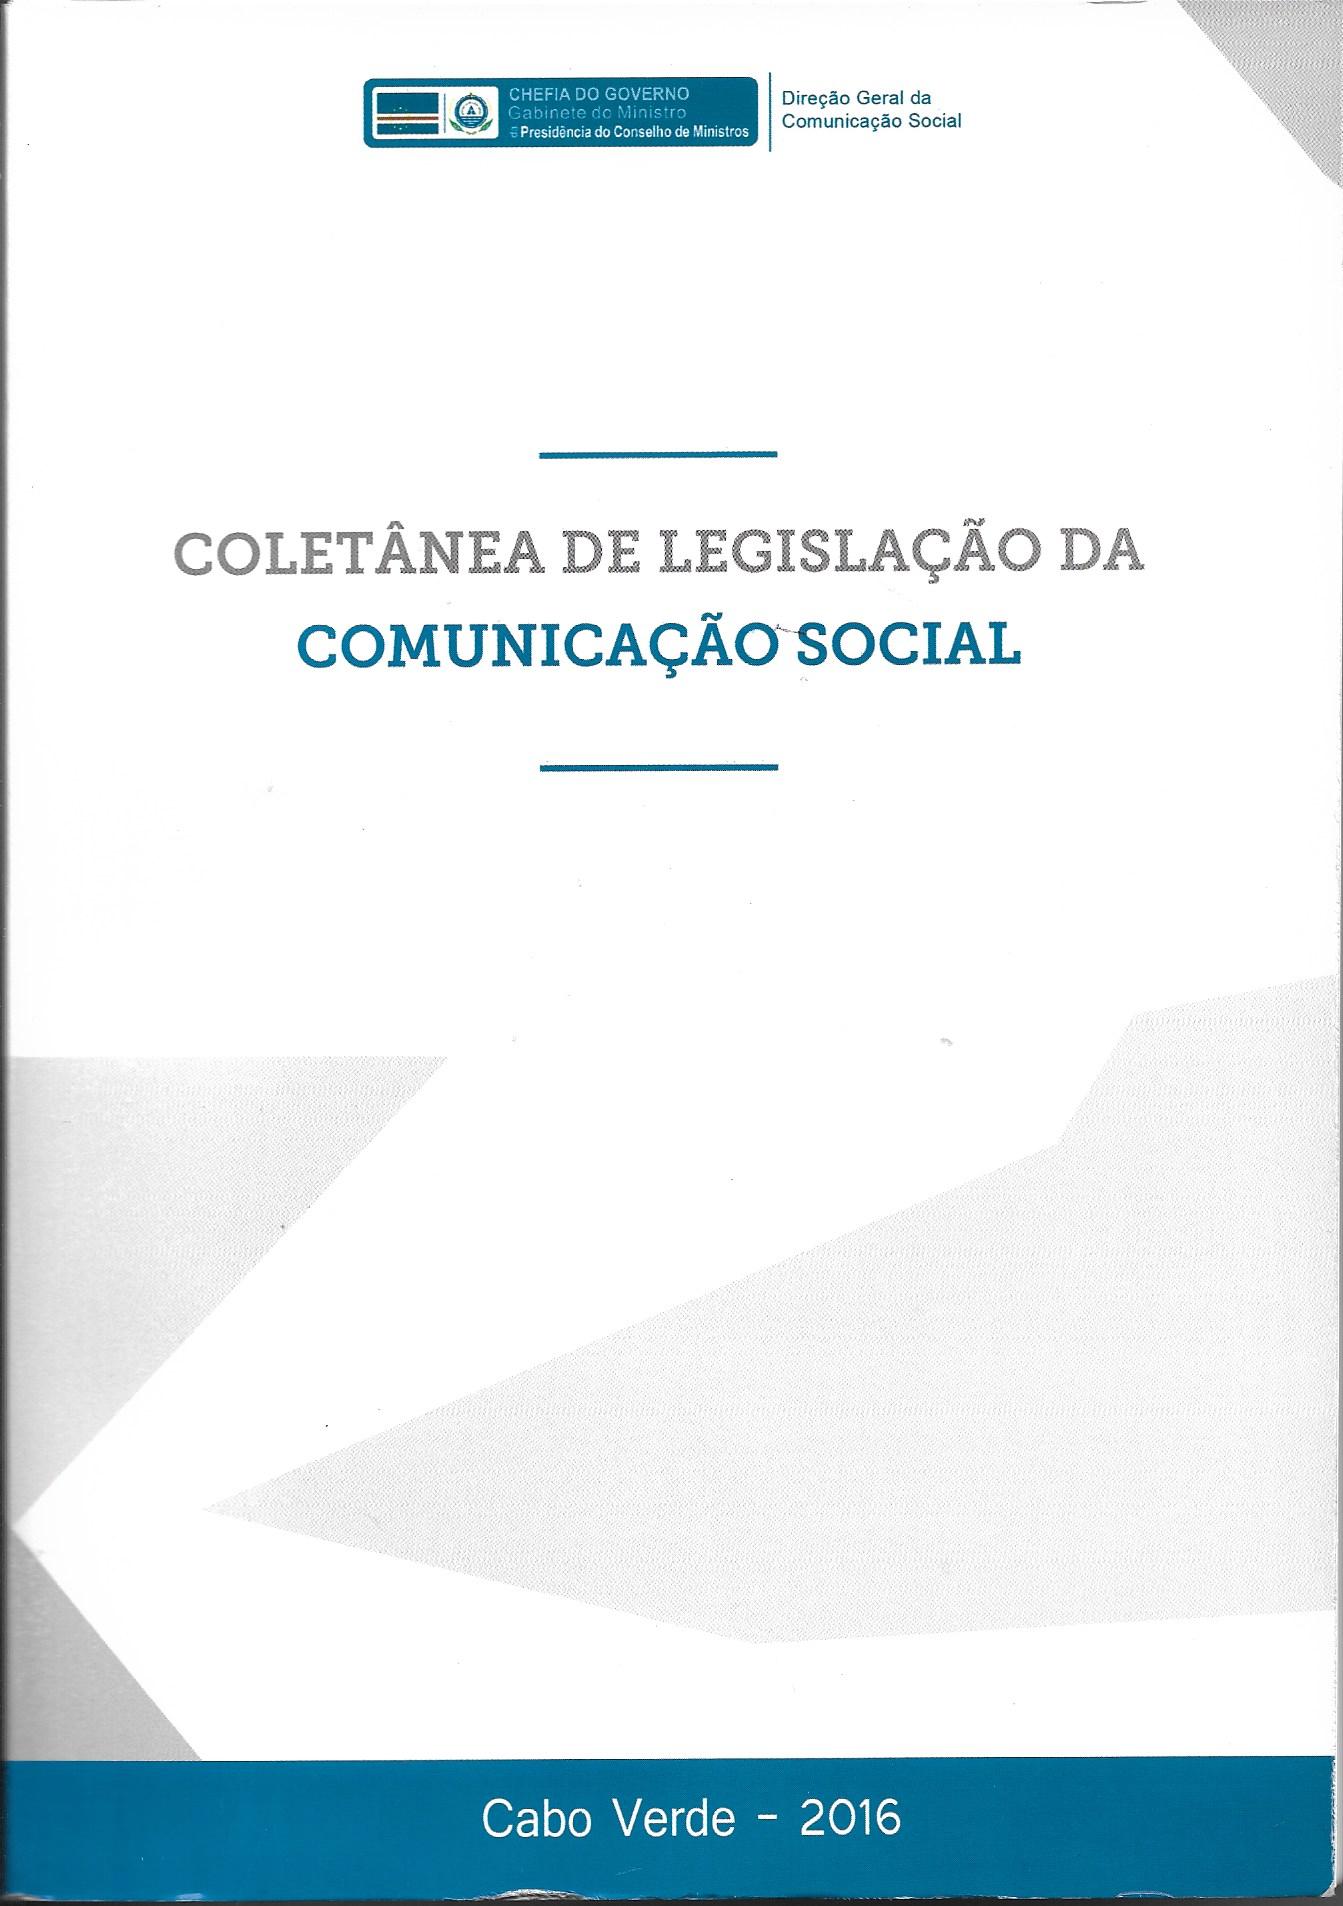 Coletânea de Legislação da Comunicação Social